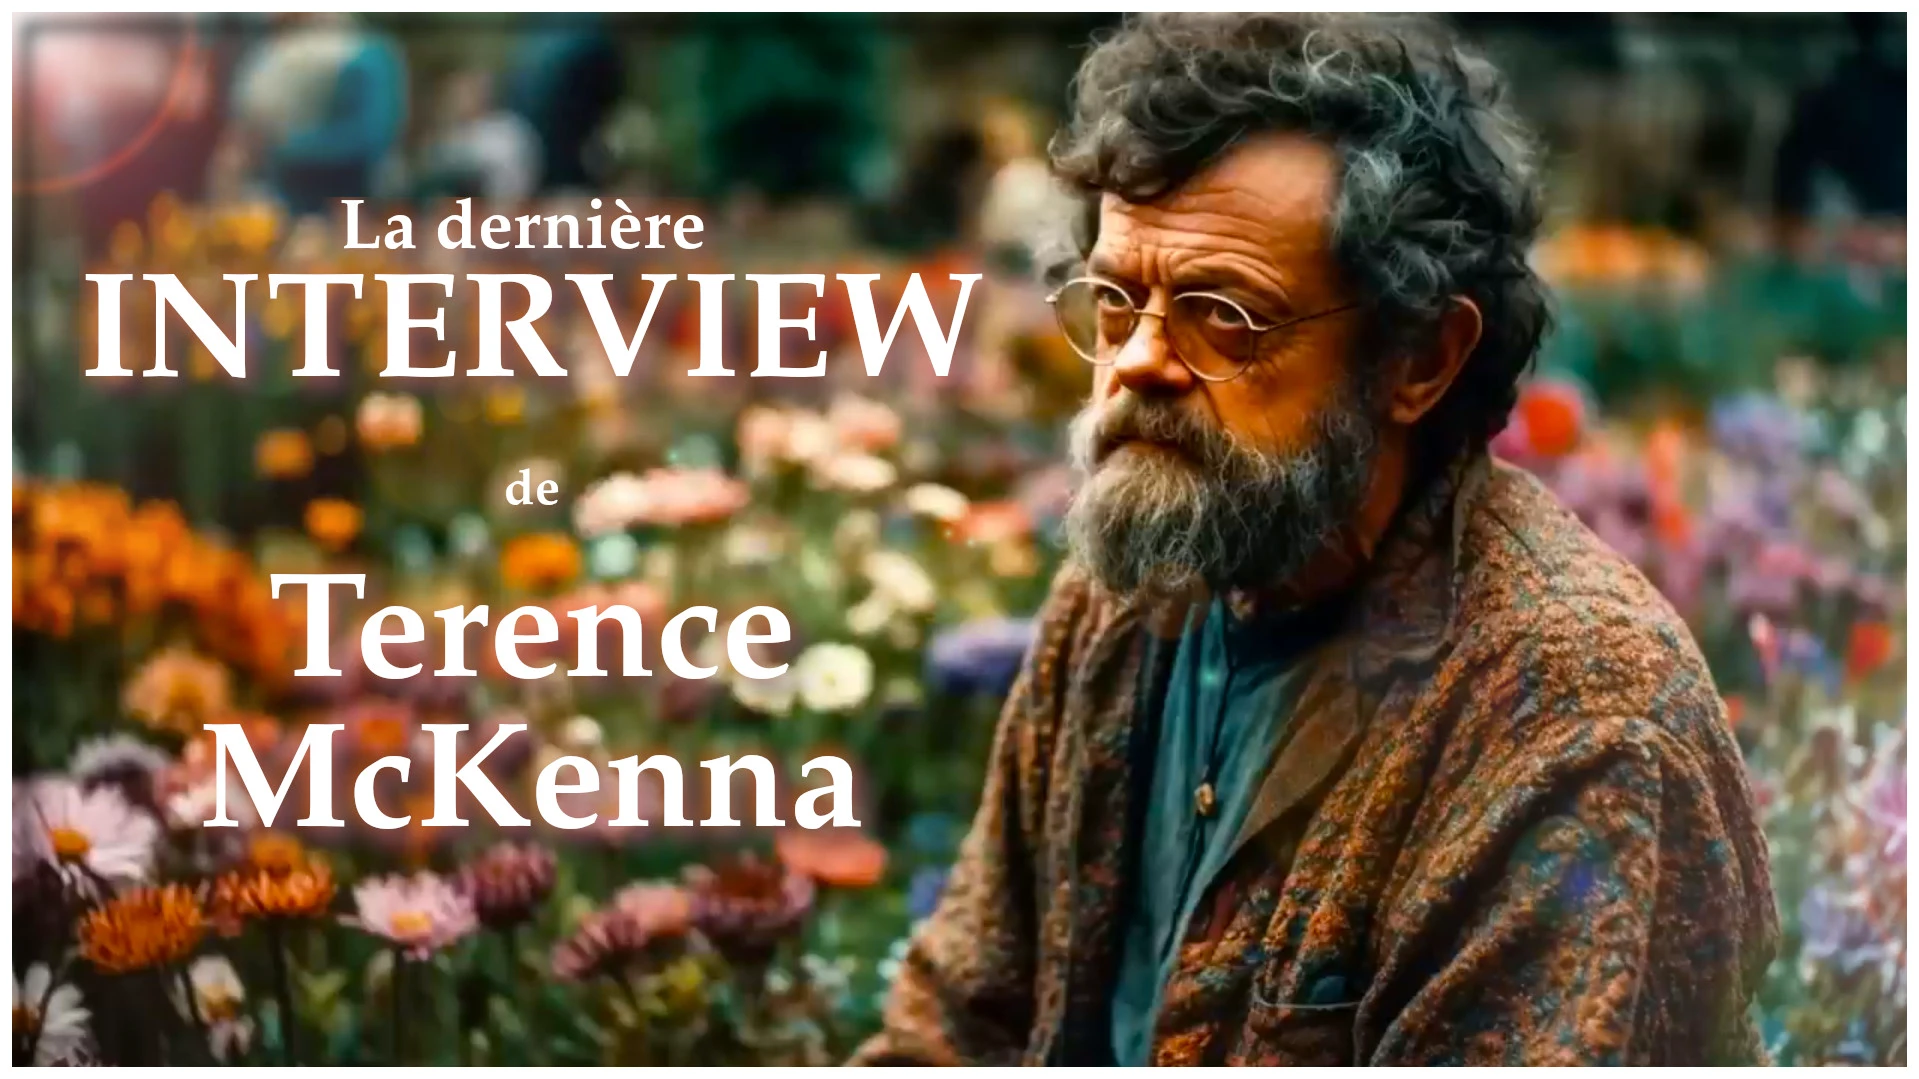 La dernière interview de Terence McKenna